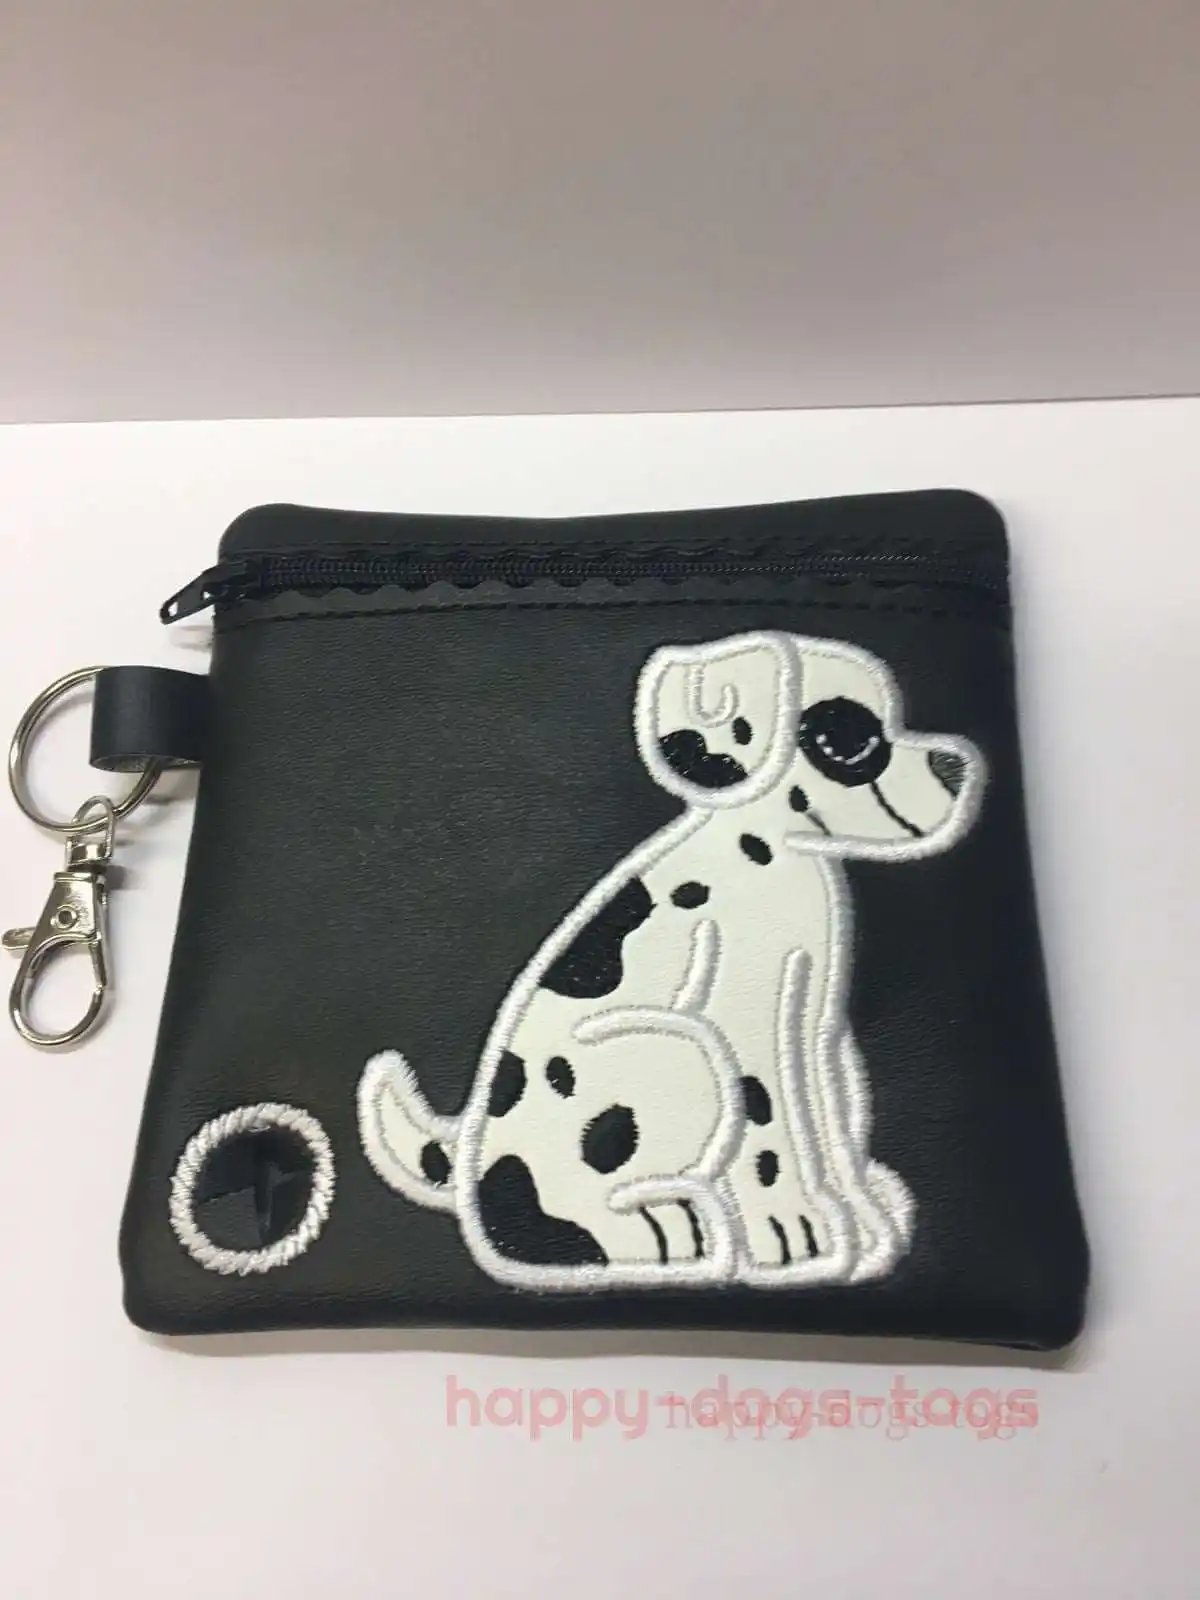 Black Embroidered Sitting Dalmation Dog poo bag dispenser